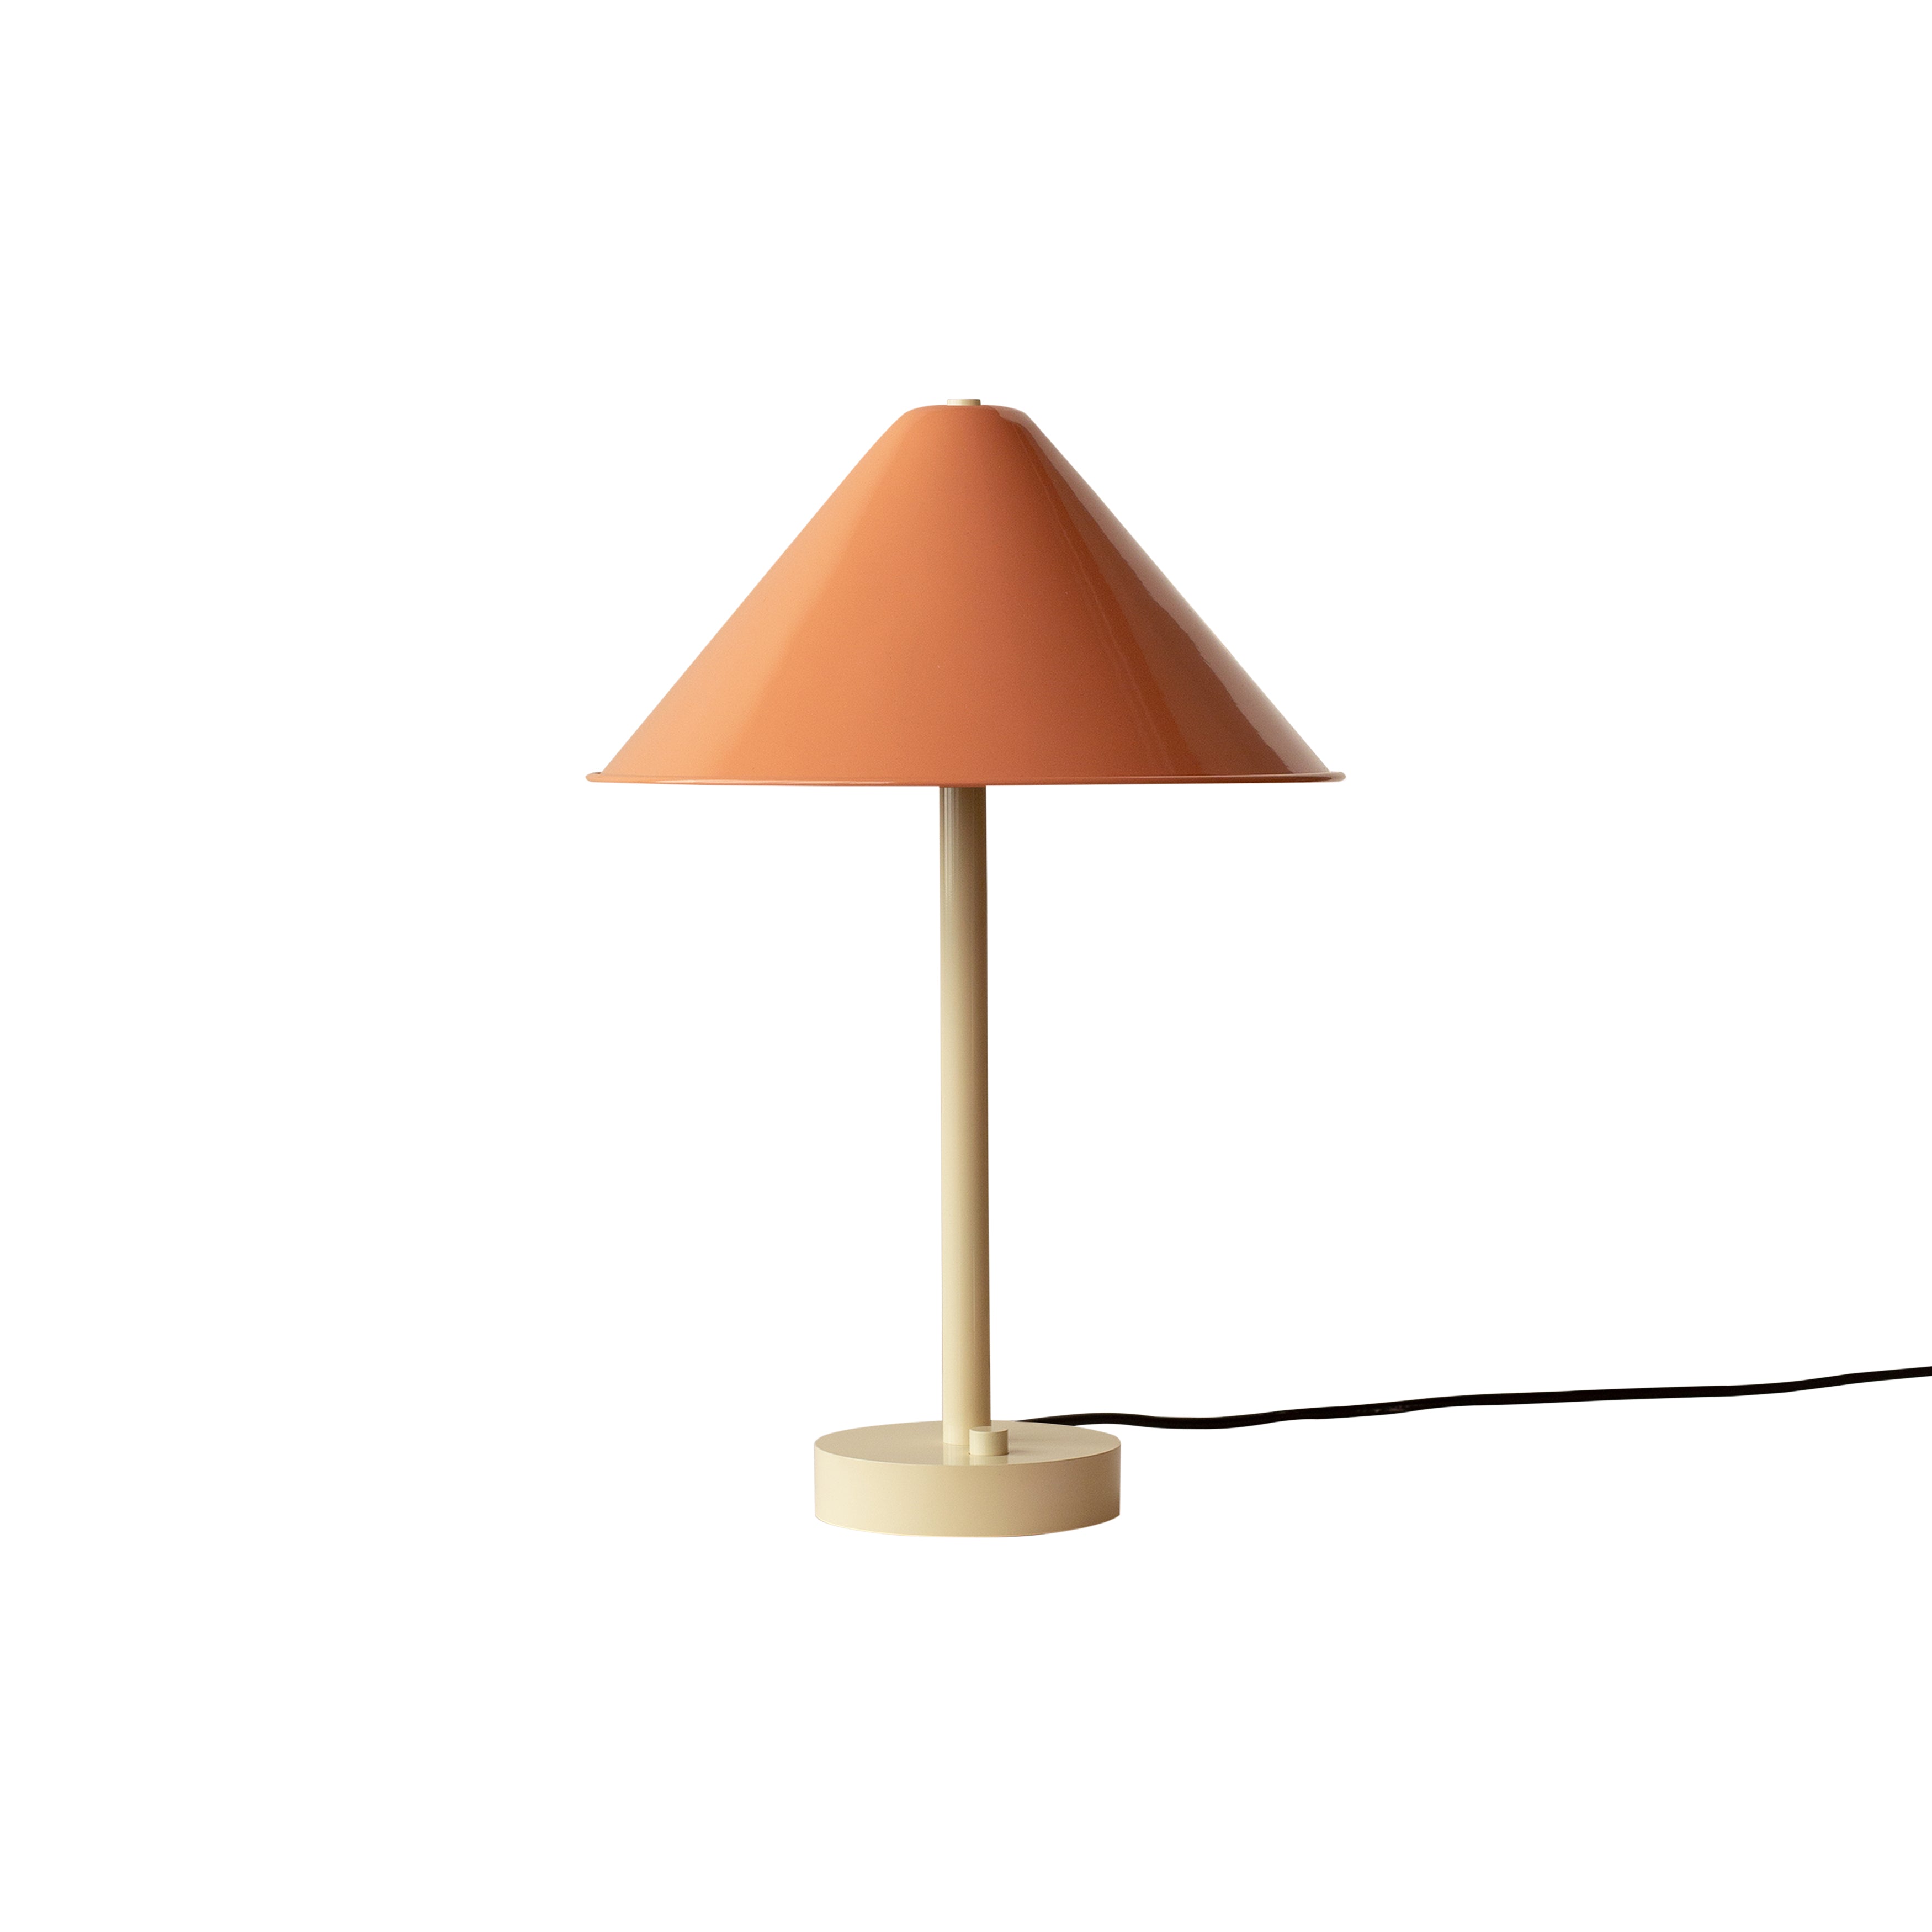 Eave Table Lamp: Peach + Bone